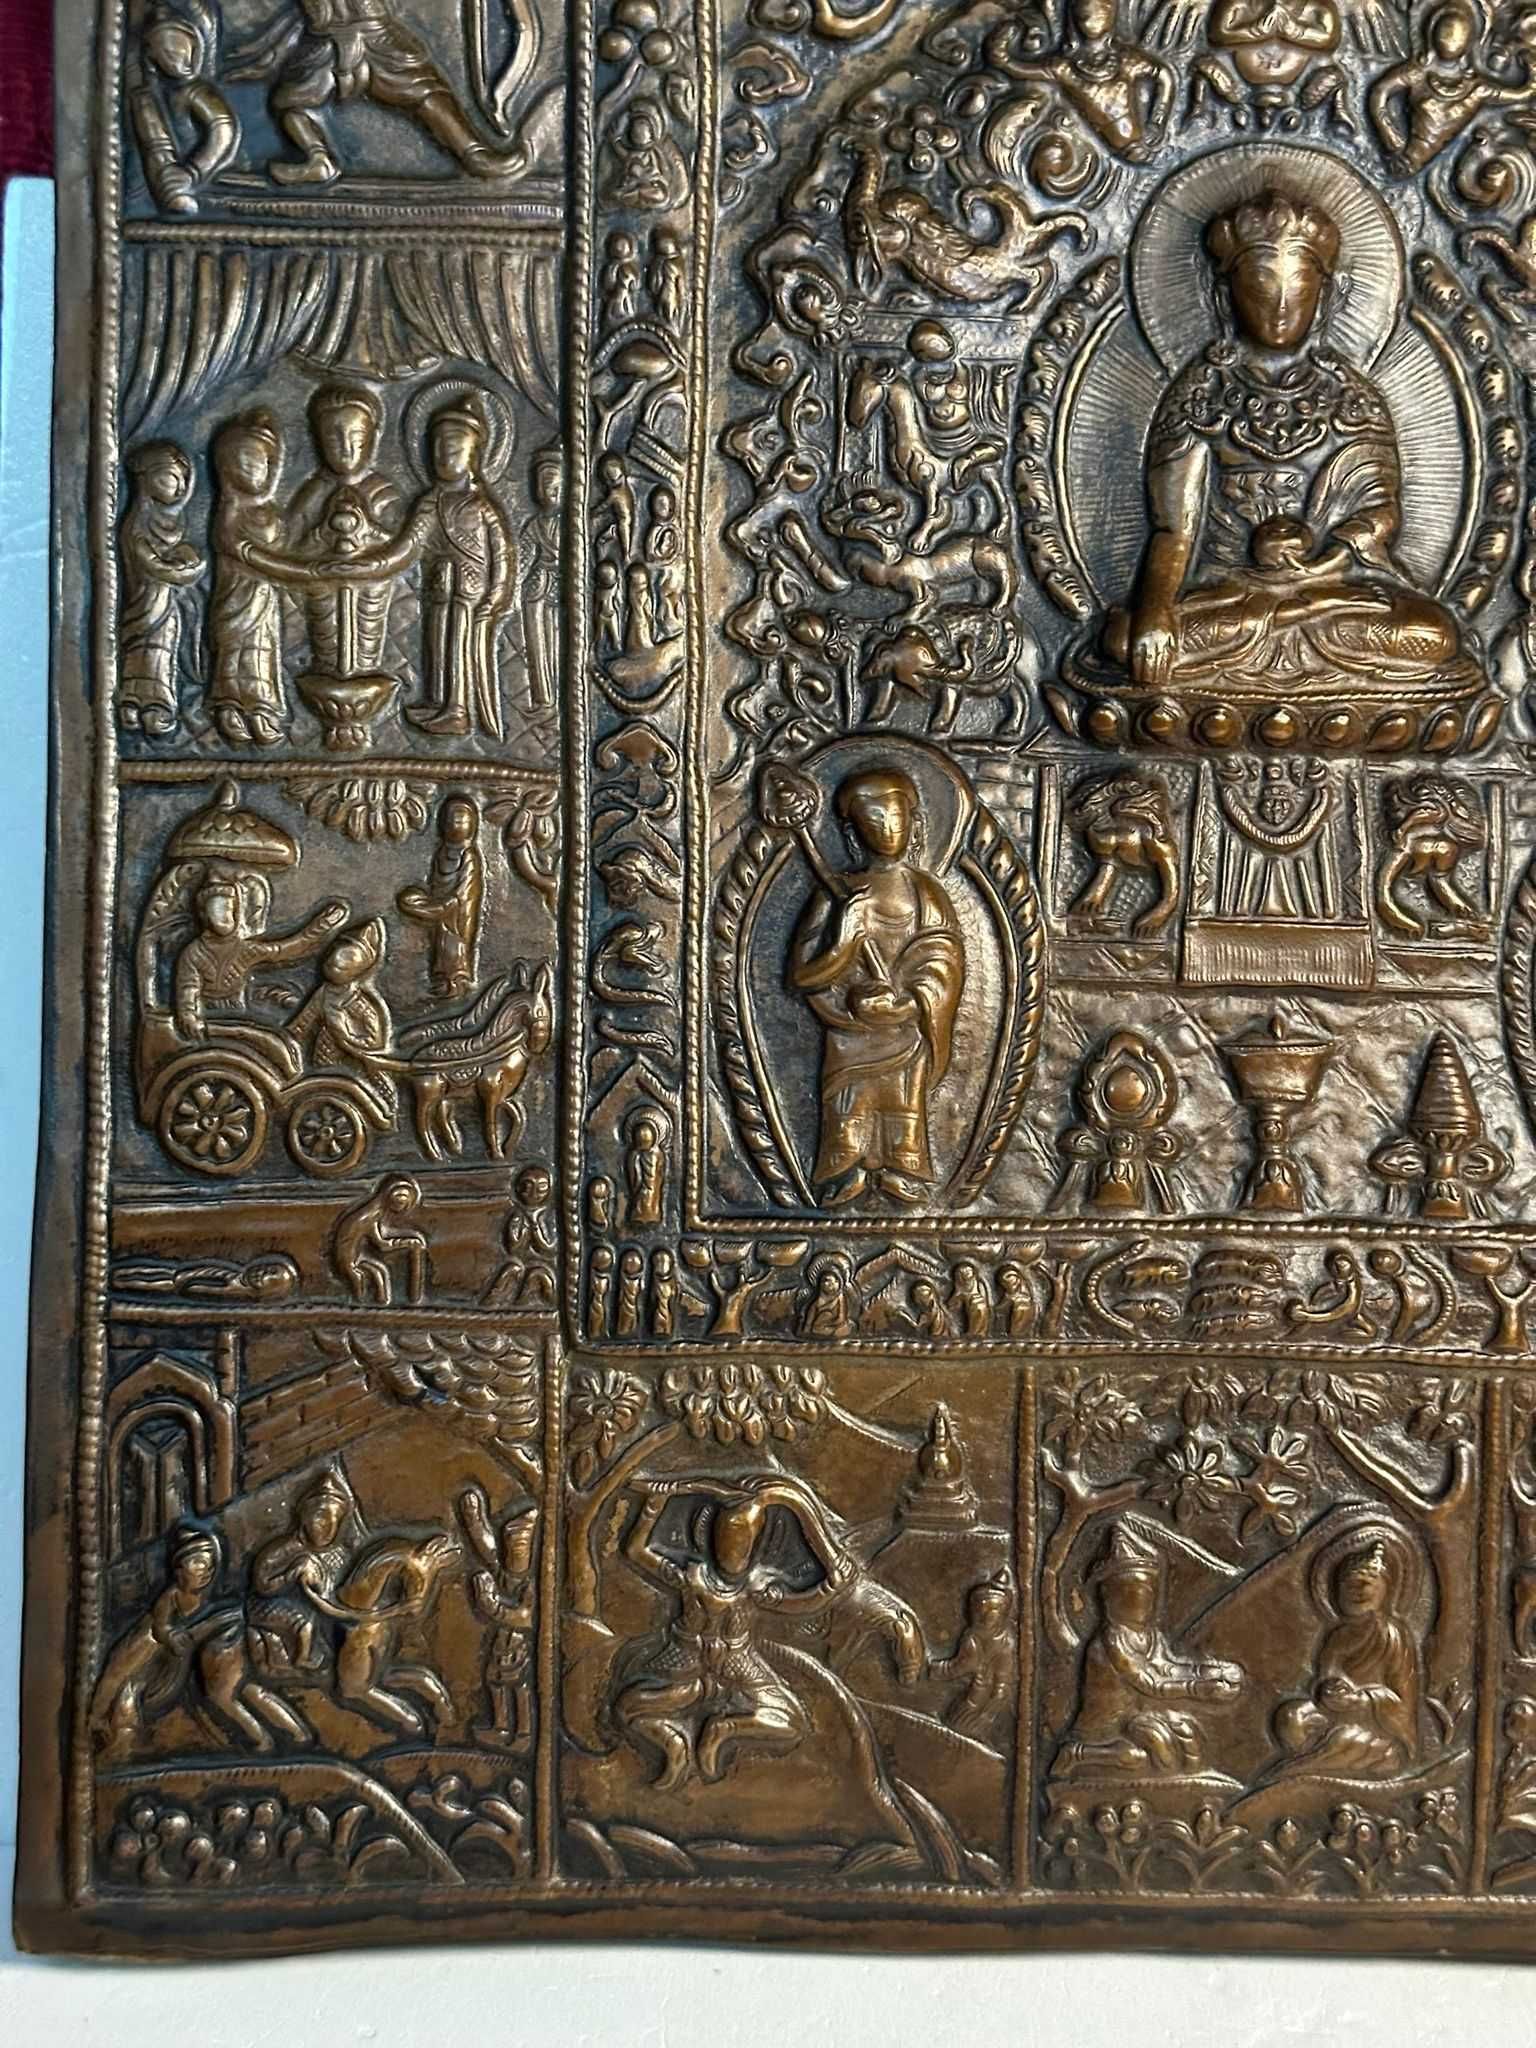 TABLOU IN CUPRU - Viata lui Shakyamuni Buddha - Repousse - Sec. 19 !